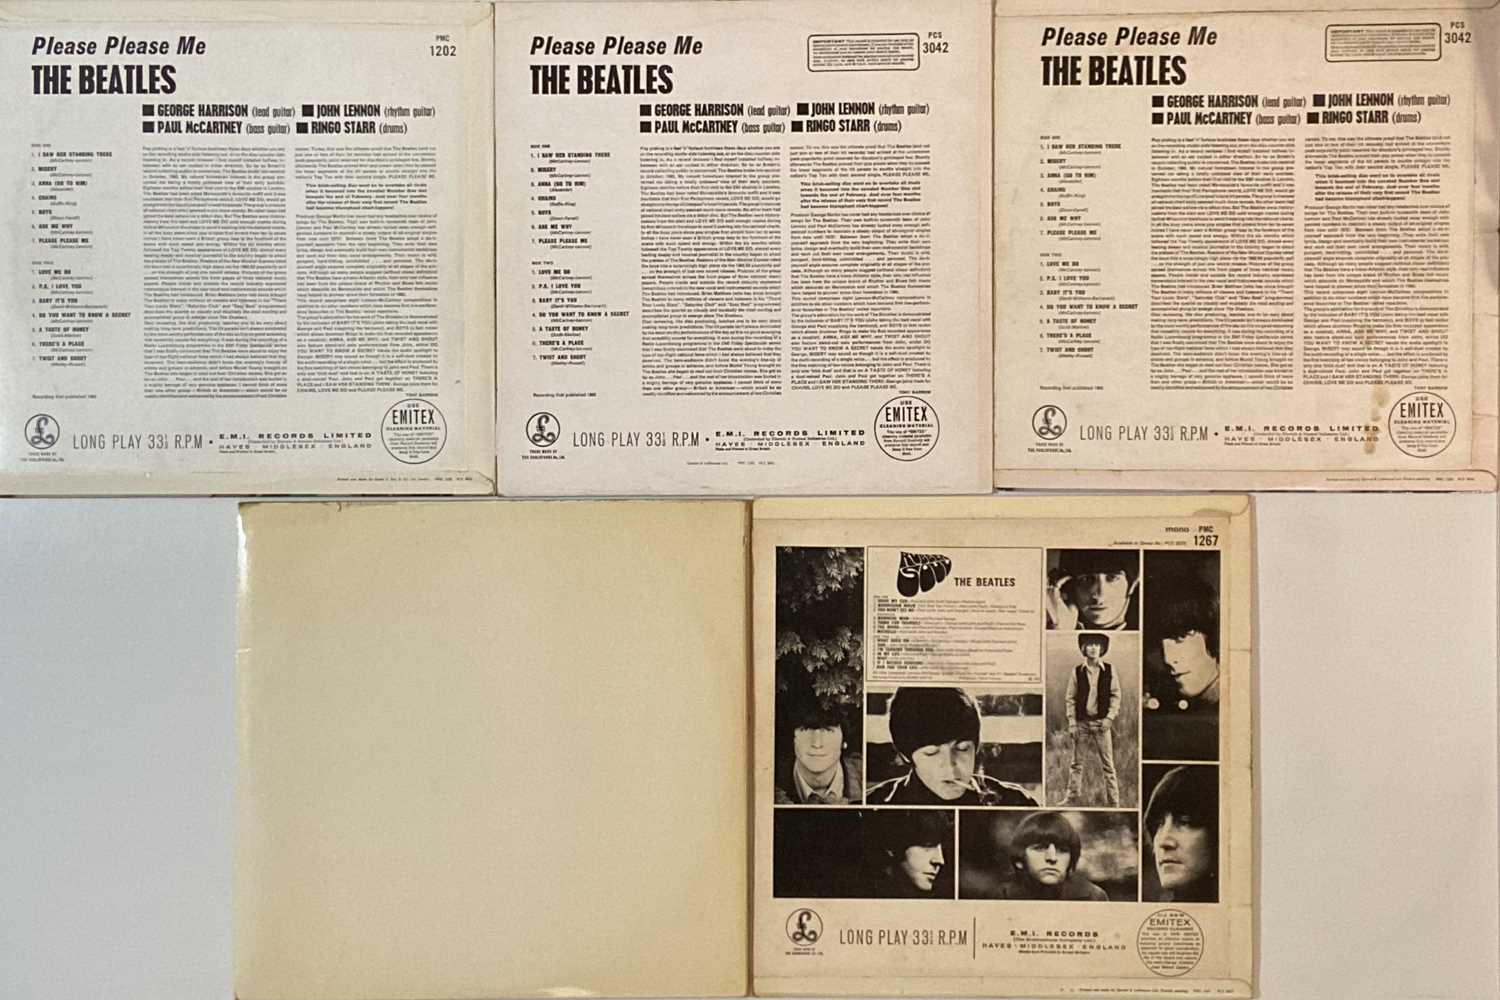 THE BEATLES - UK STUDIO LPs - Image 2 of 2